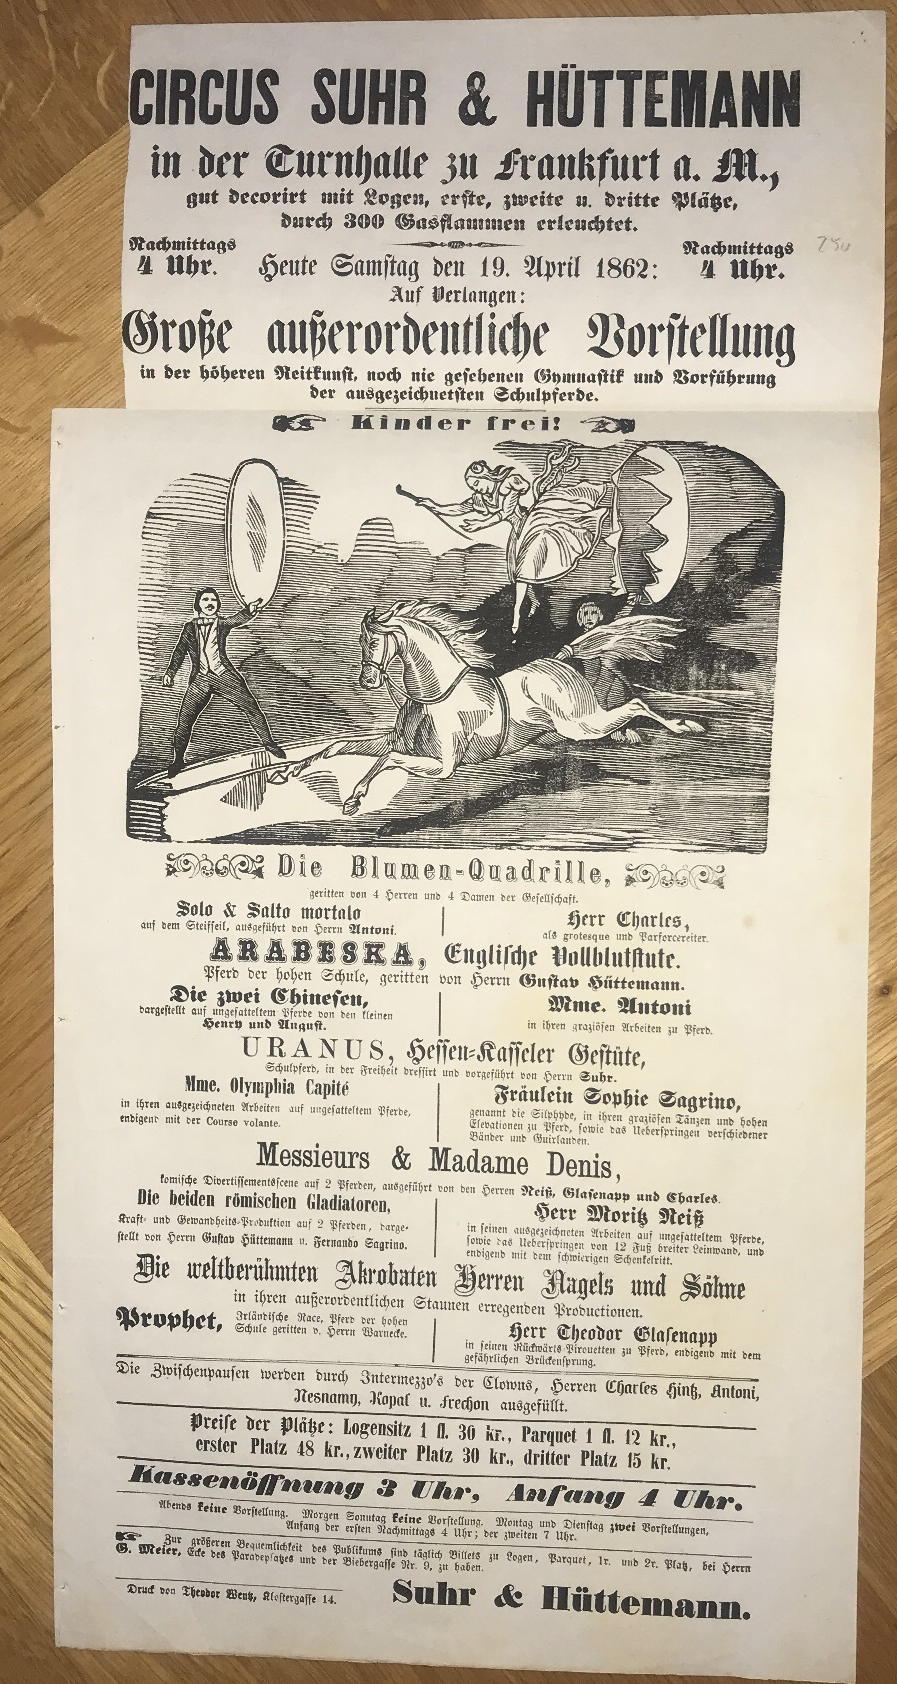  - Heute Freitag den 19. April 1862: Grosse ausserordentliche Vorstellung in der hheren Reitkunst, noch nie gesehen Gymnastik und Vorfhrung der ausgezeichnetsten Schulpferde..